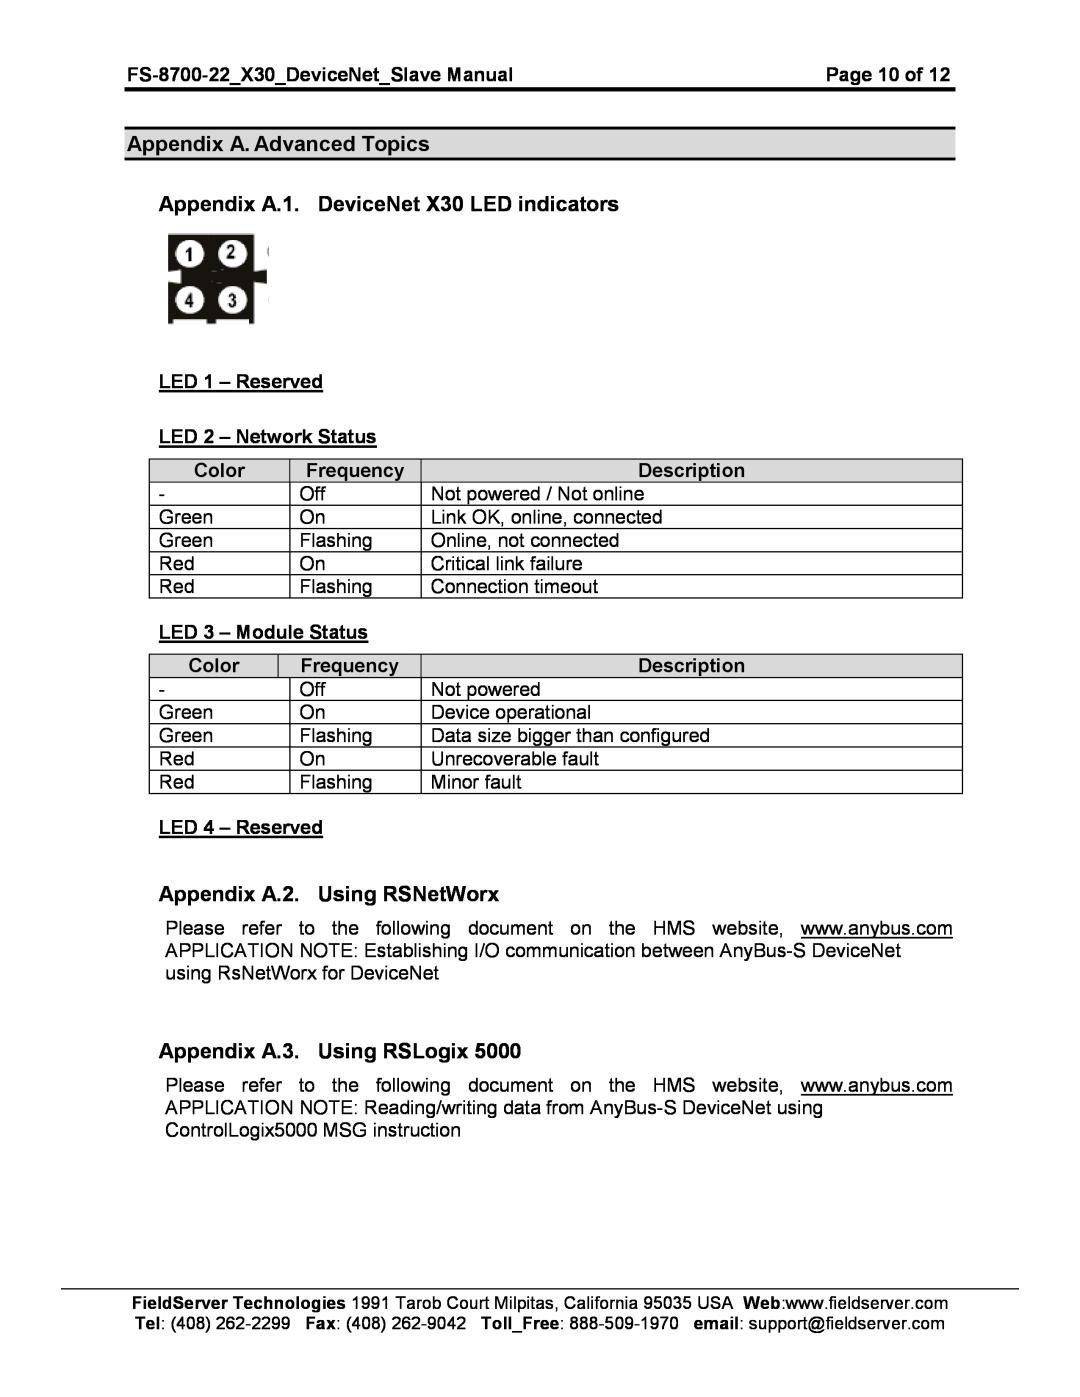 FieldServer FS-8700-22 X30 instruction manual Appendix A. Advanced Topics, Appendix A.1. DeviceNet X30 LED indicators 